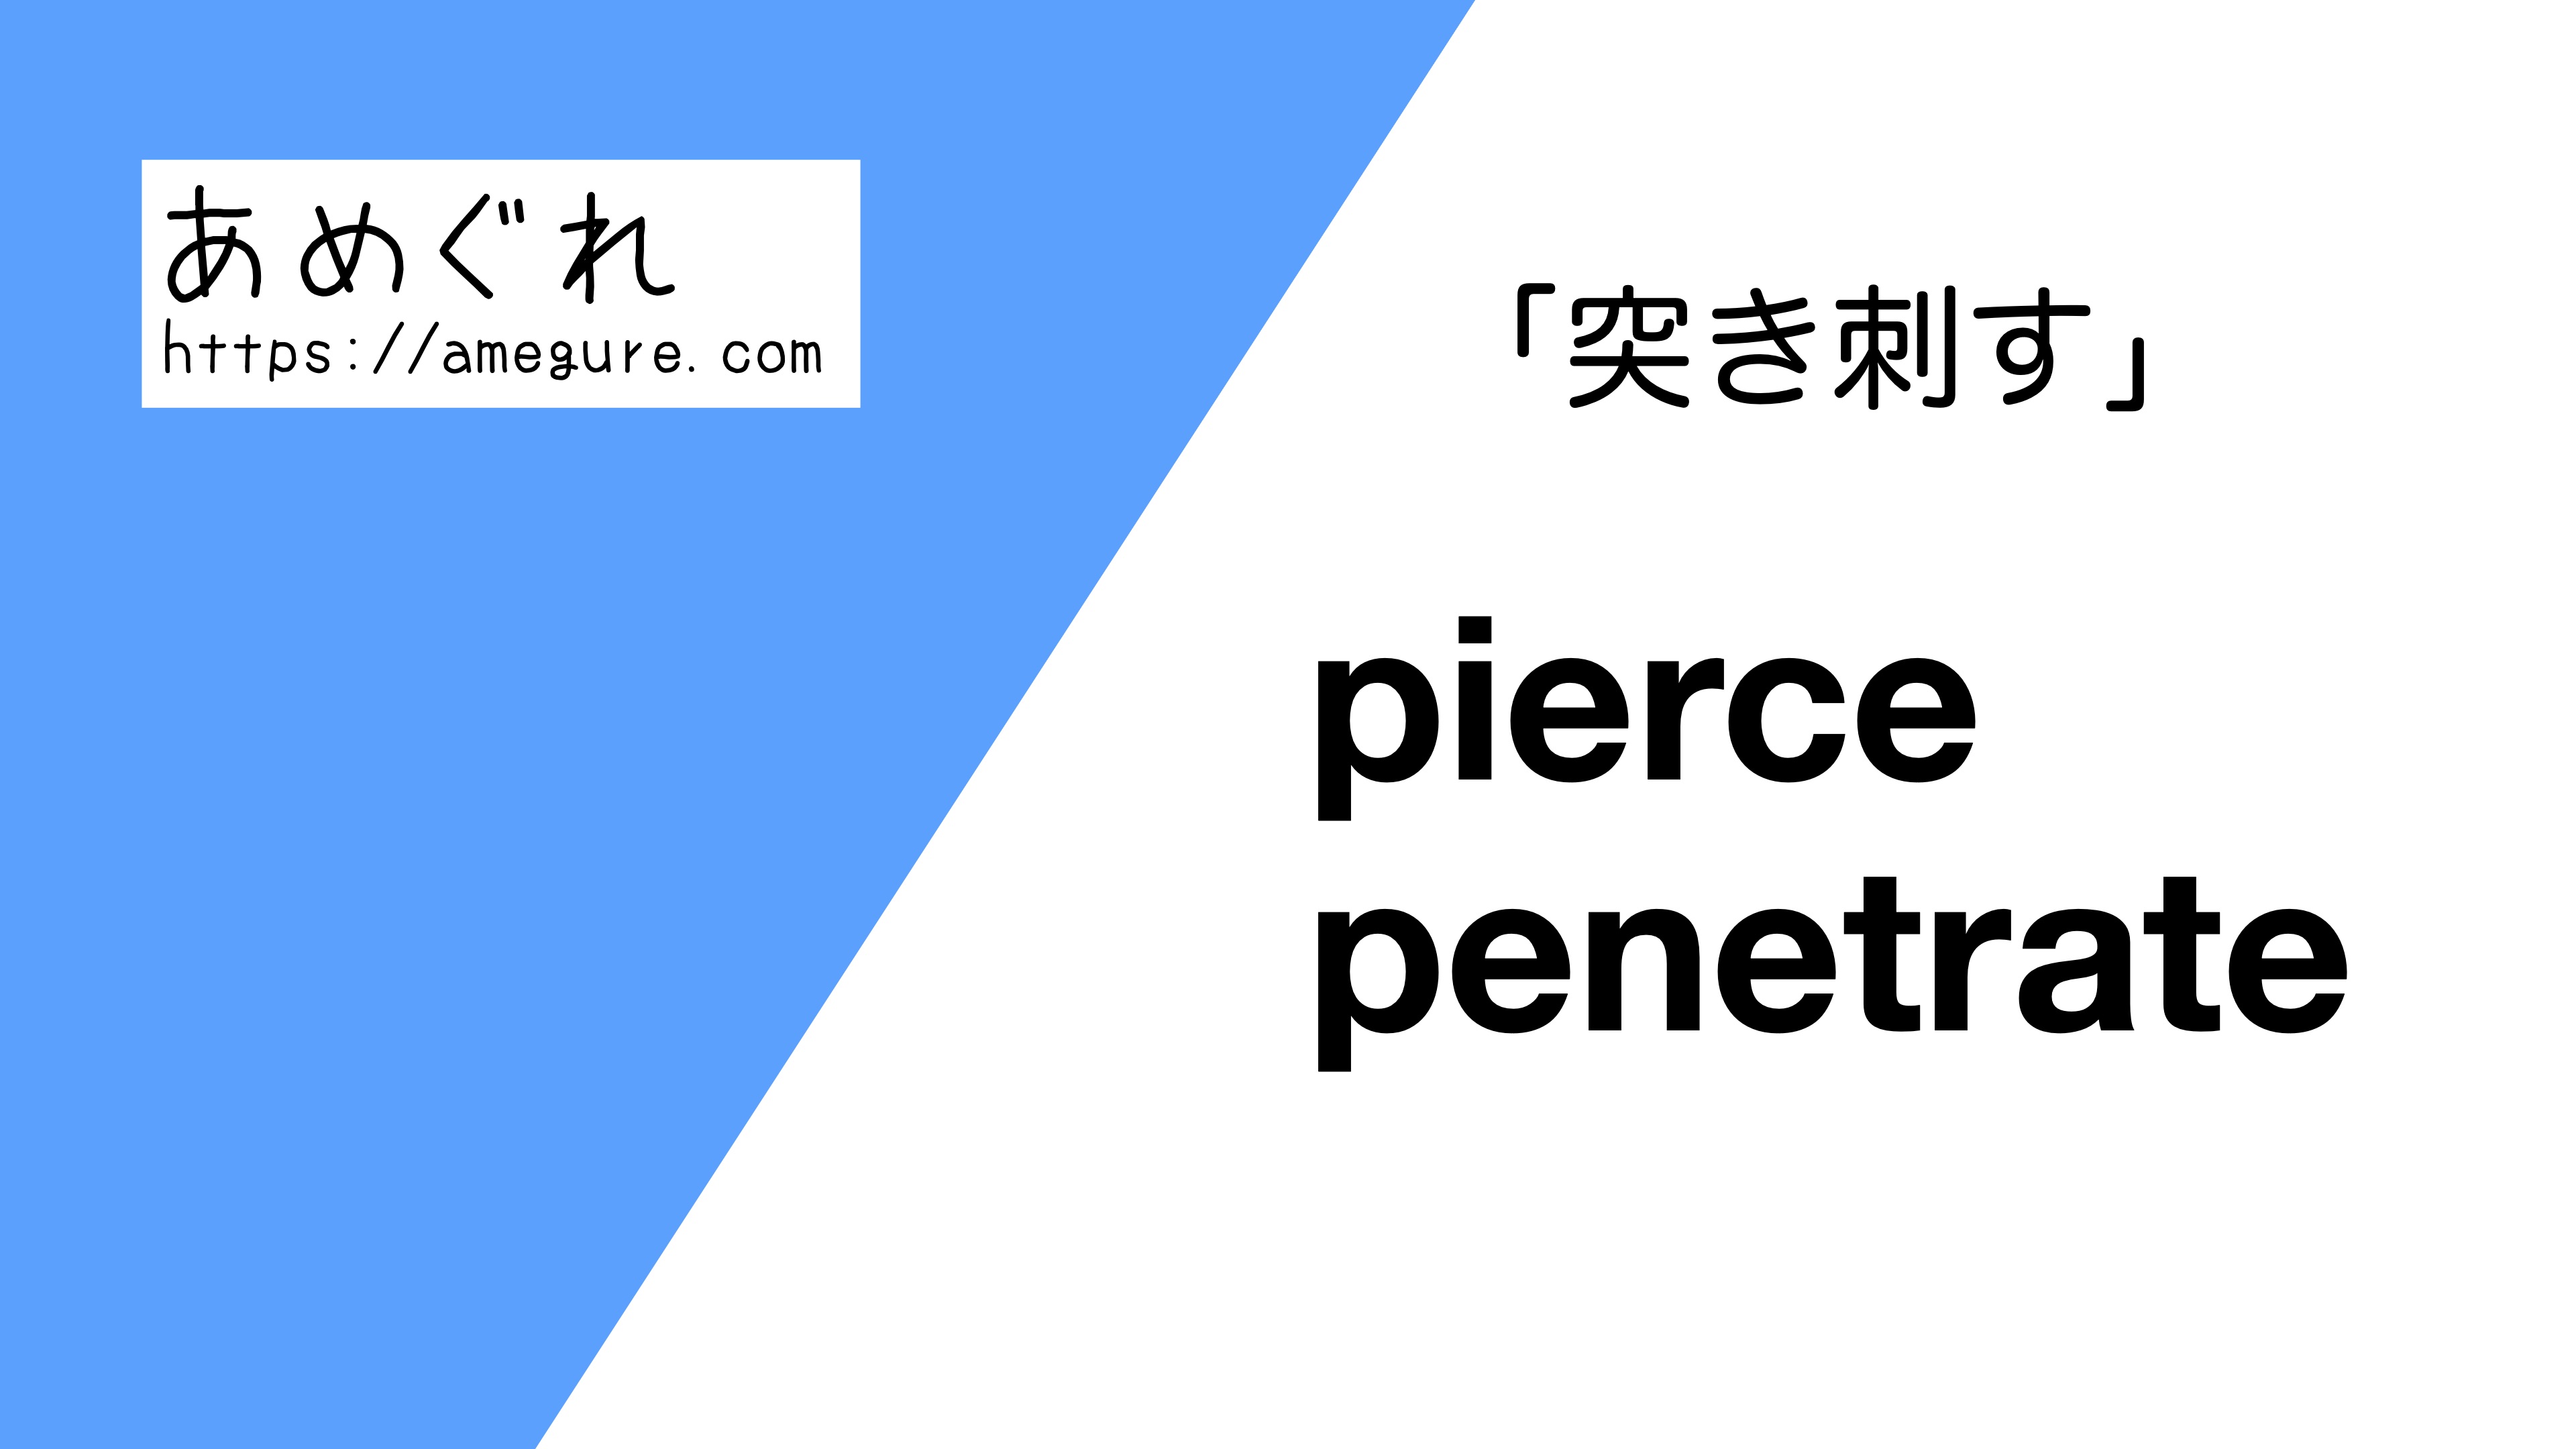 pierce-penetrate違い